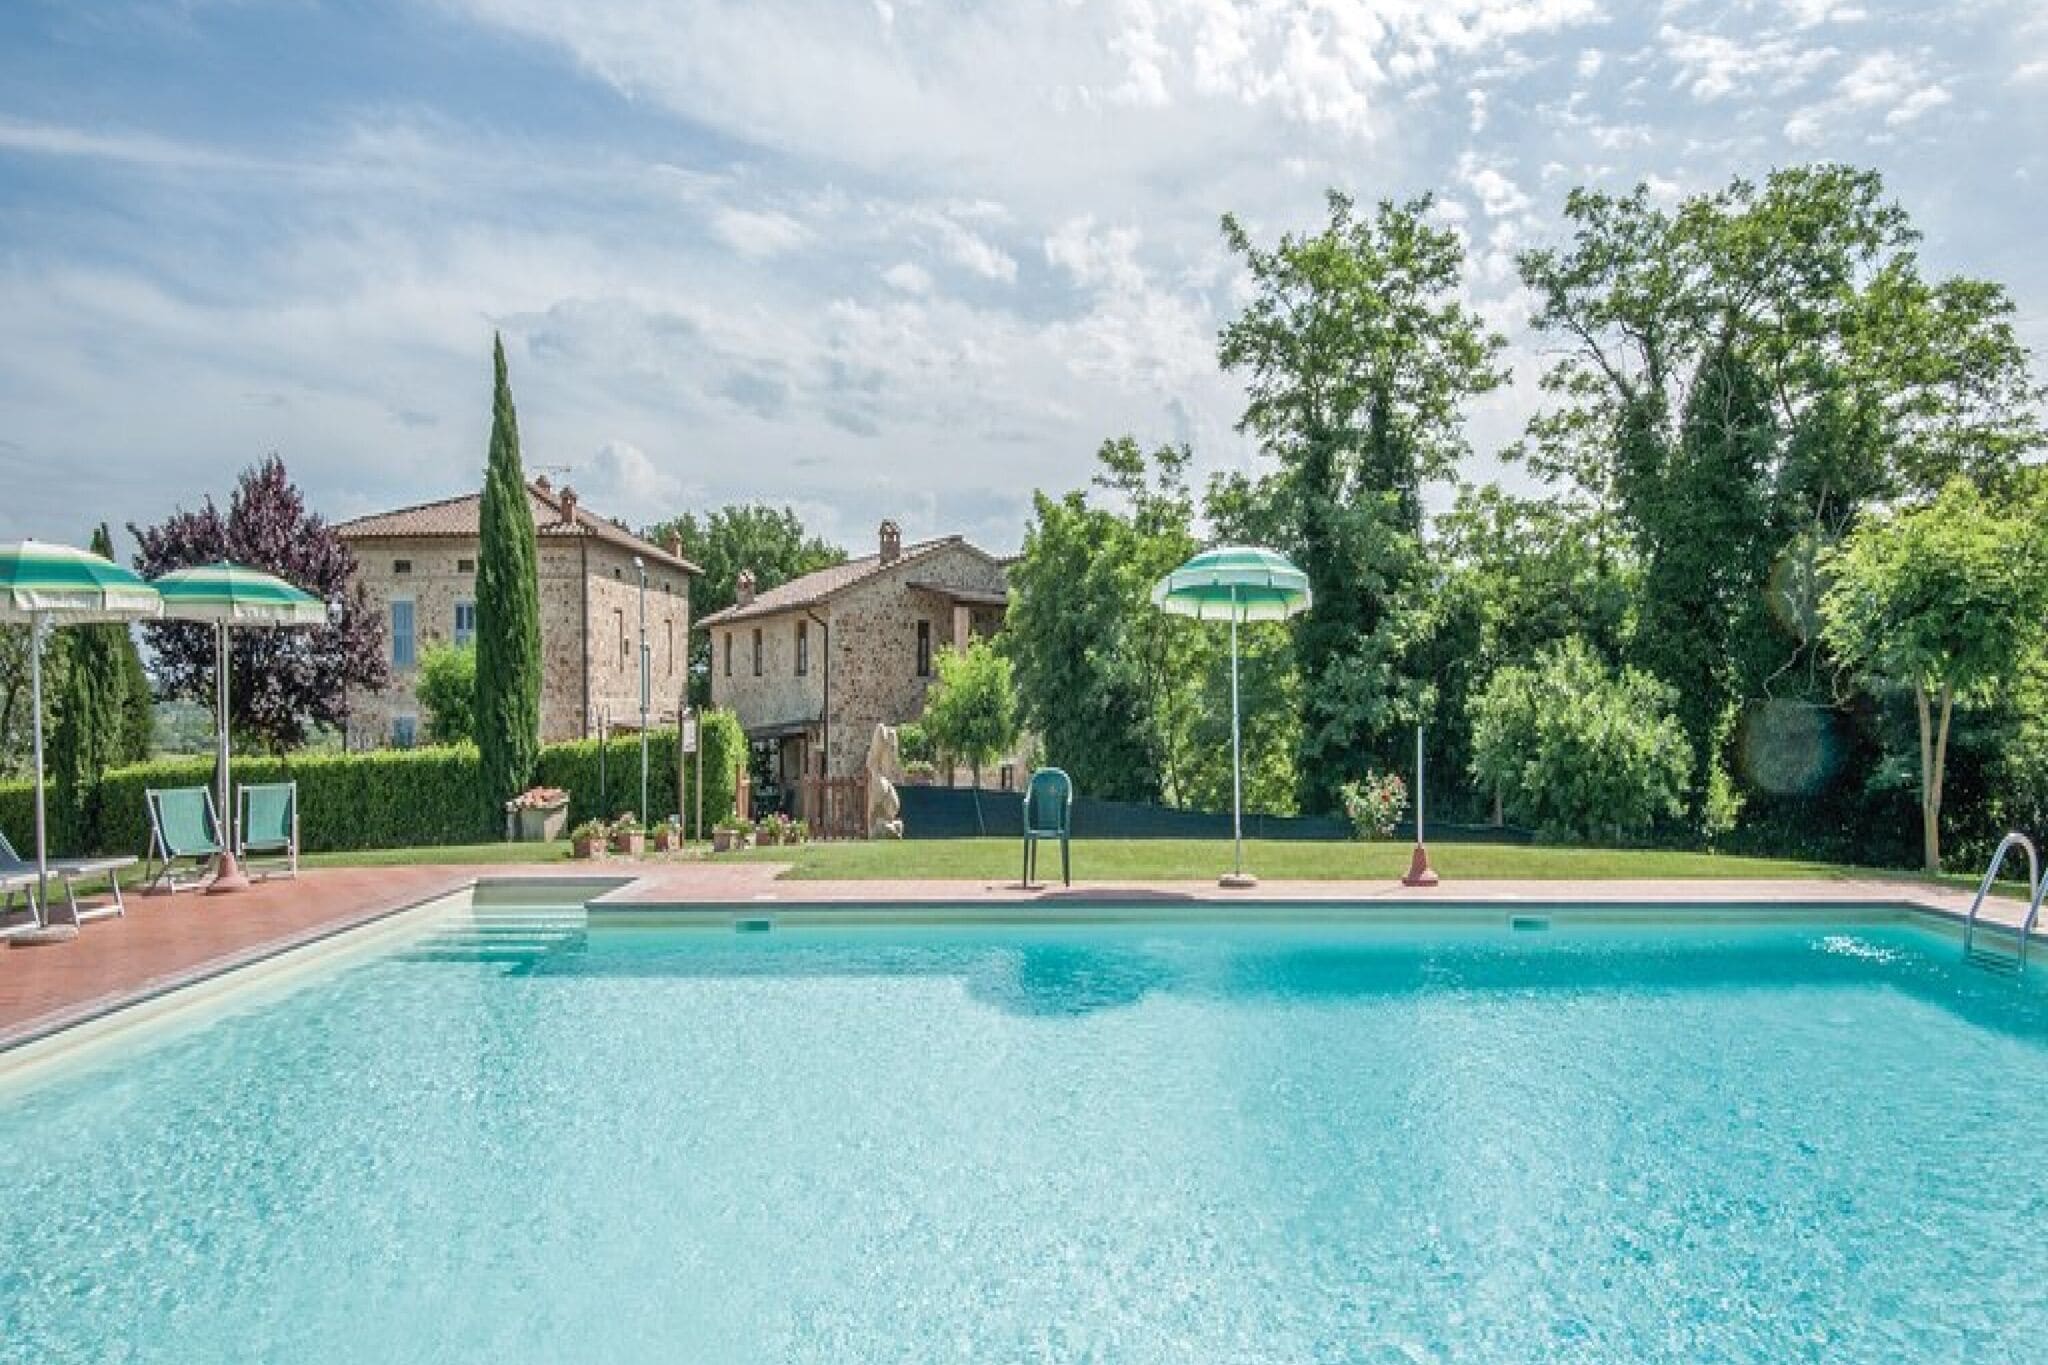 In Wohnungen aufgeteiltes Ferienhaus in der Toskana mit Swimmingpool